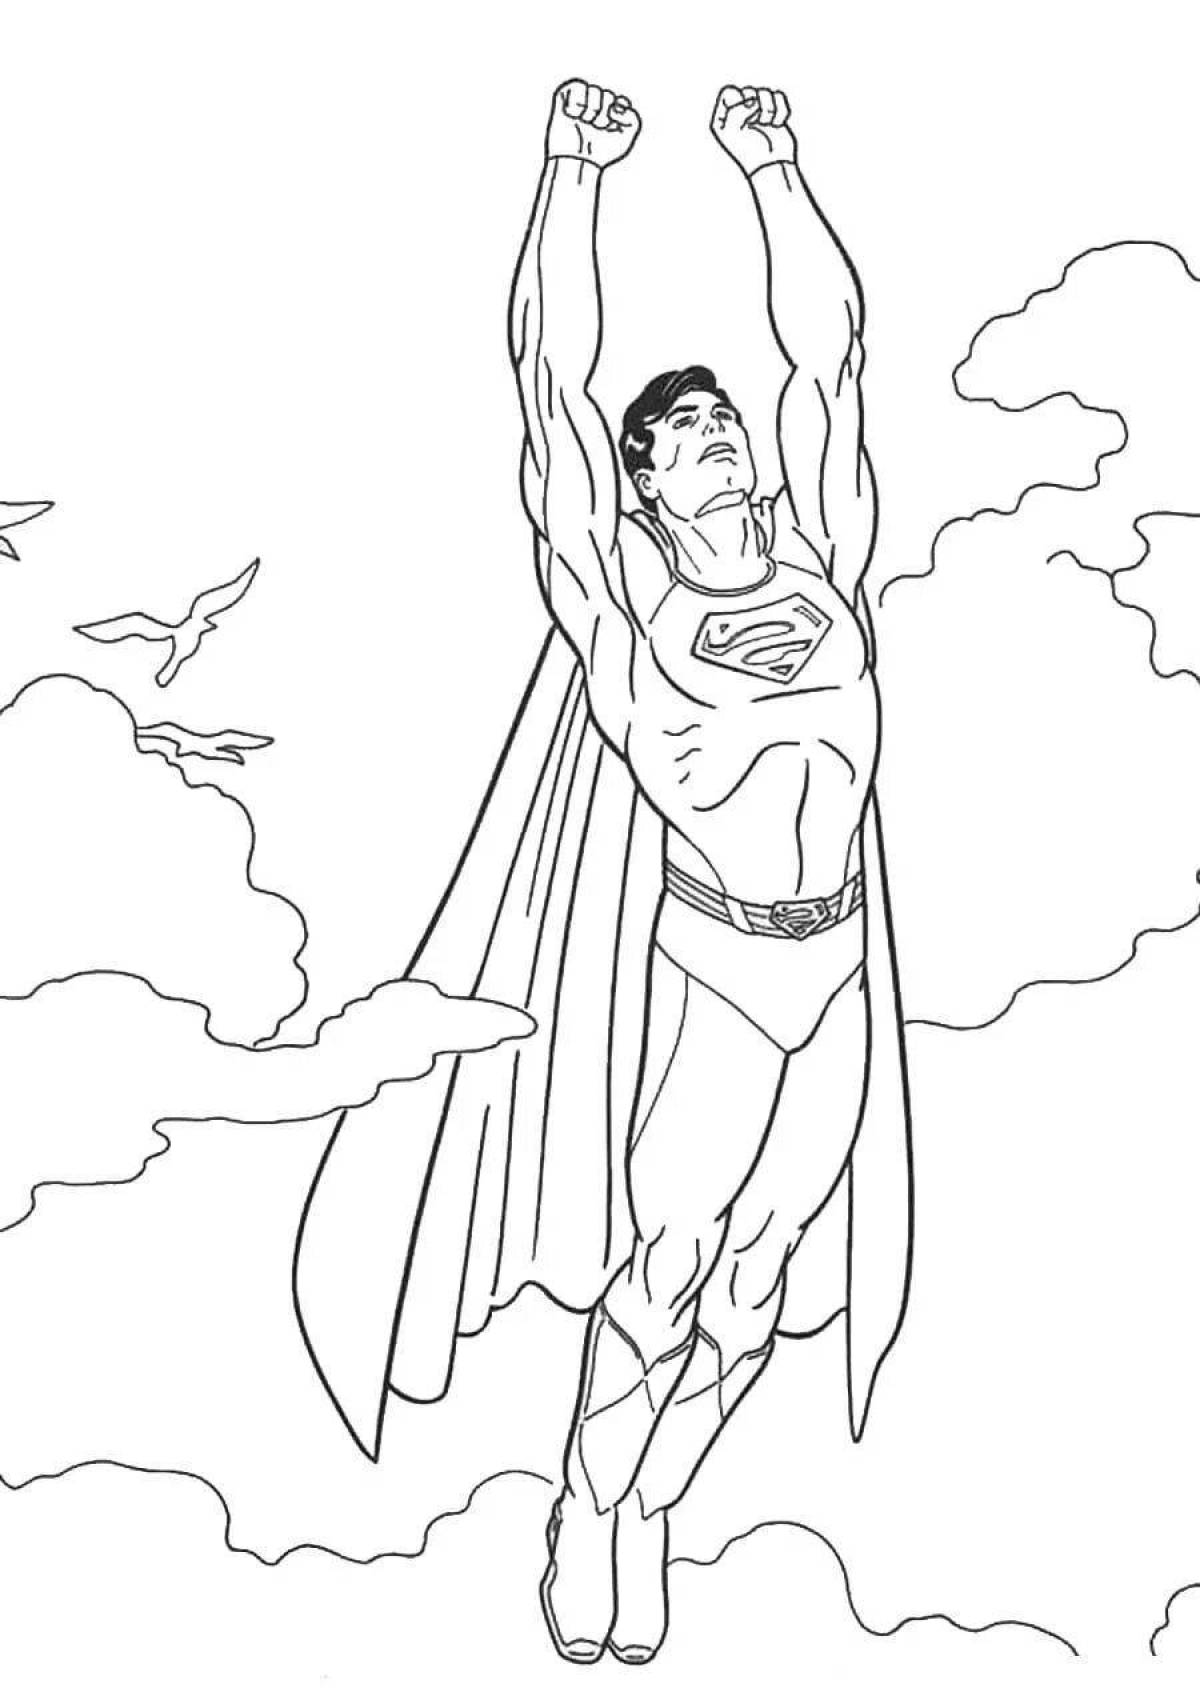 Юмористическая раскраска супермен для детей 3-4 лет